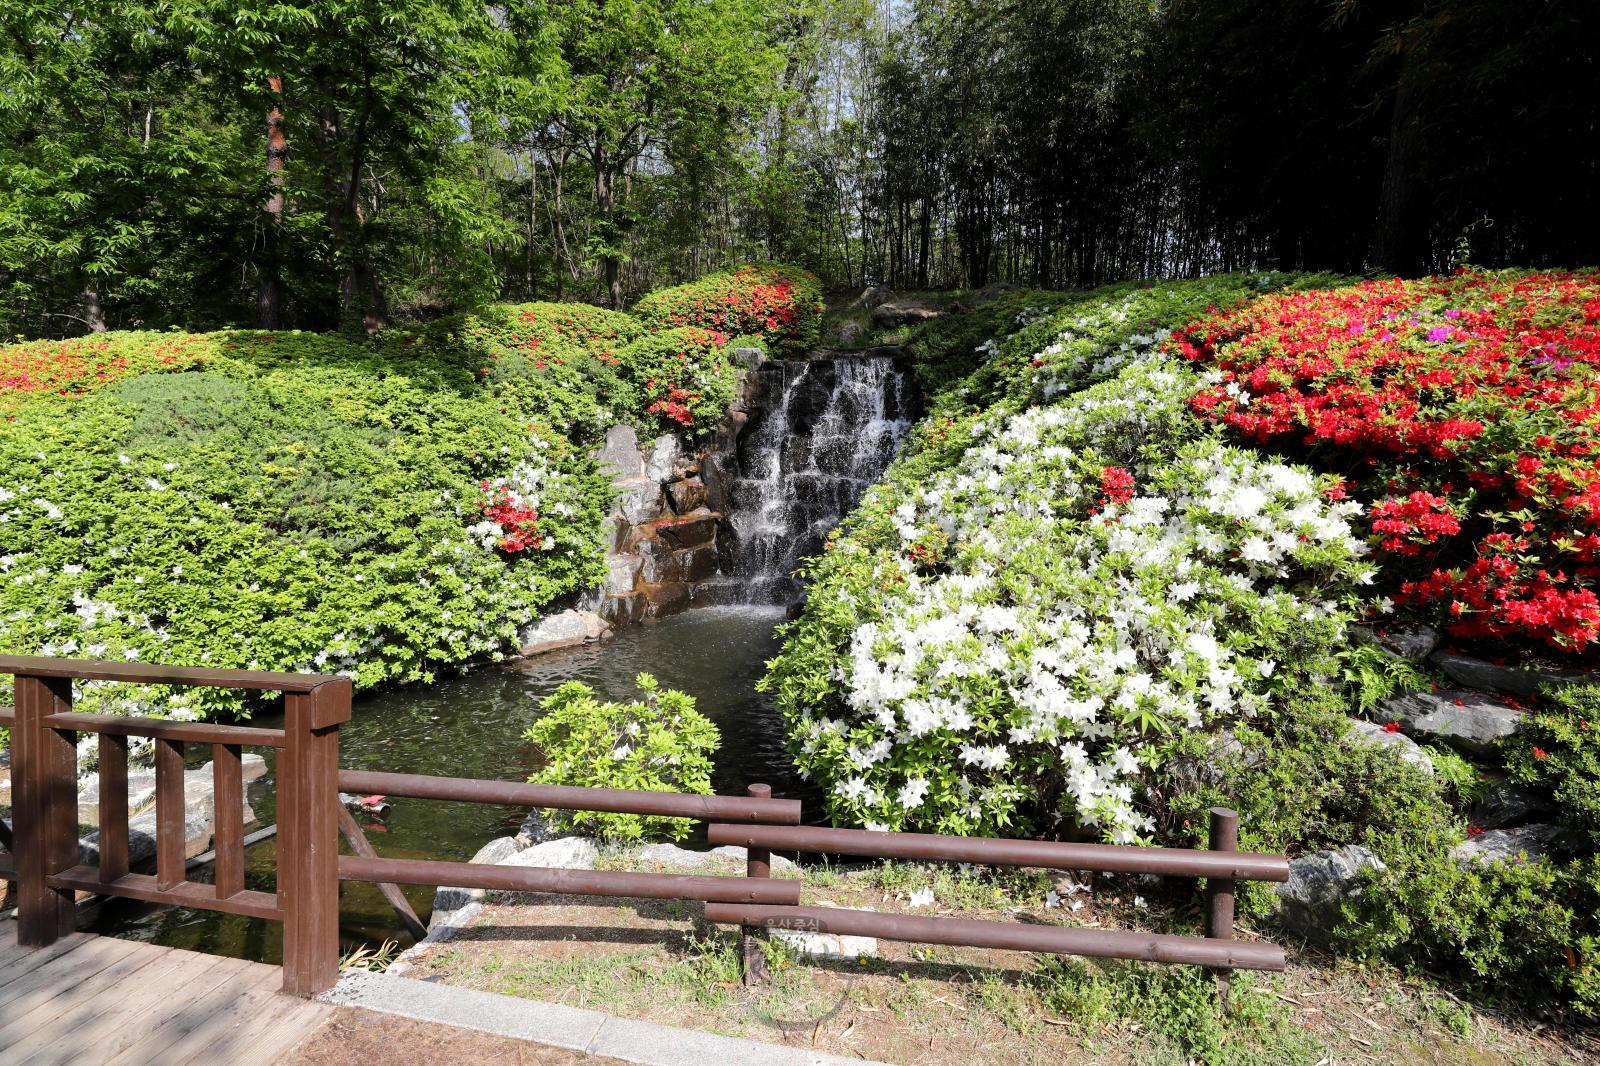 선암호수공원 벽천폭포 철쭉꽃 - 울남9경 의 사진